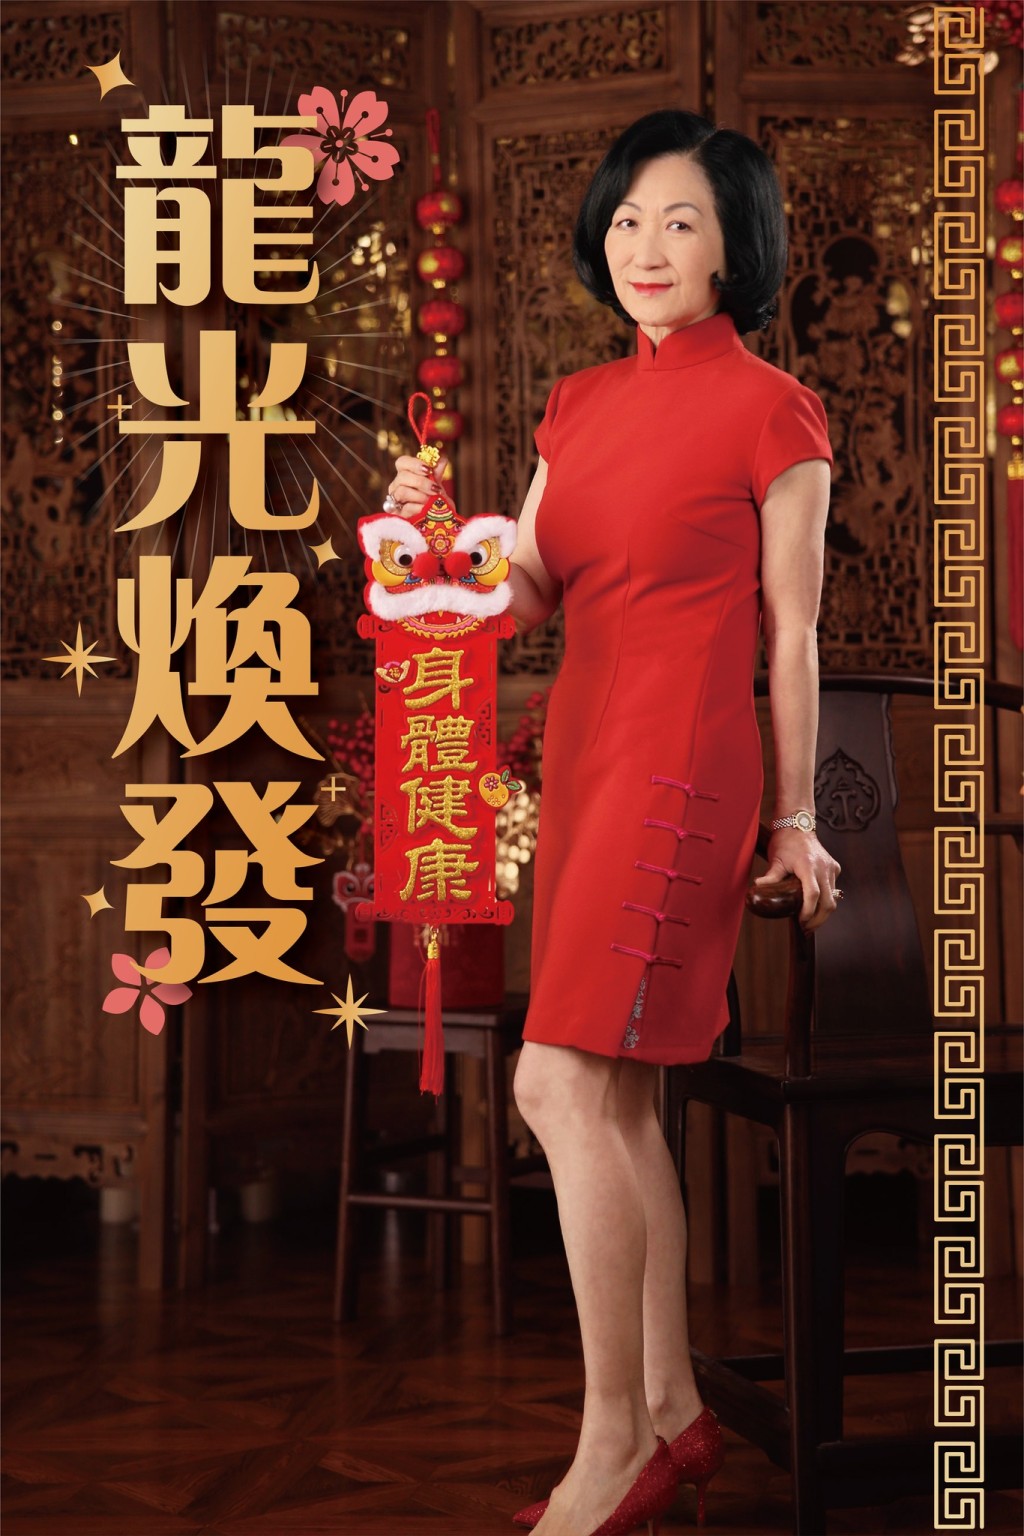 叶太身穿带有百合图案的红色旗袍，向市民拜年。叶刘淑仪FB